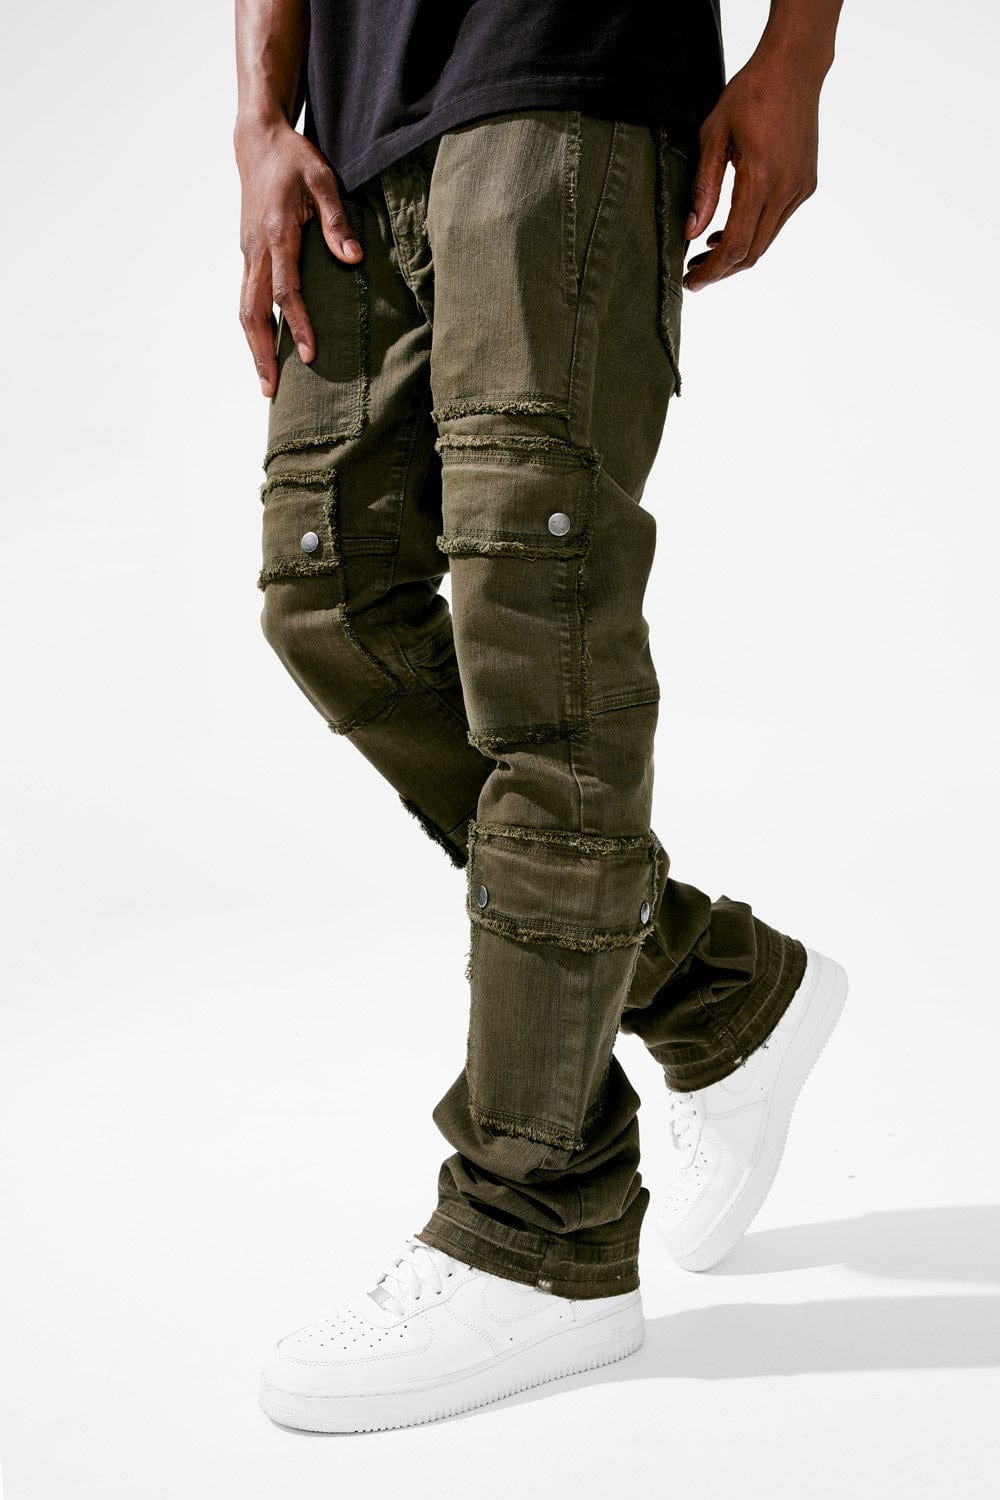 Jordan Craig Martin Stacked - El Dorado Cargo Pants (Army Green)